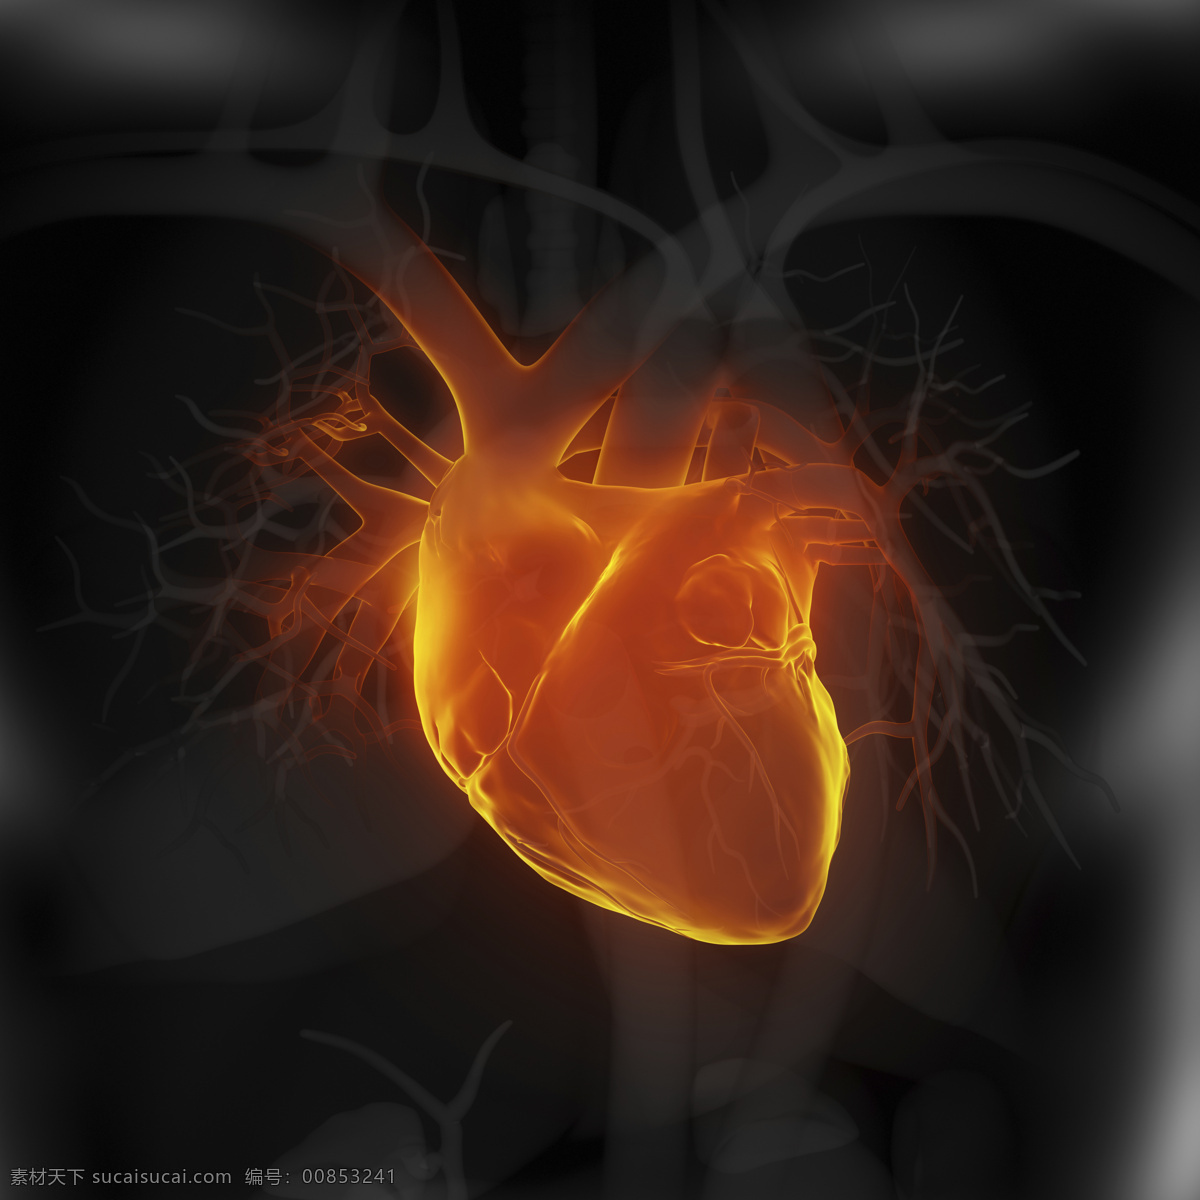 心脏 血管 器官 心脏器官 血管器官 人体器官 医疗科学 医学 人体器官图 人物图片